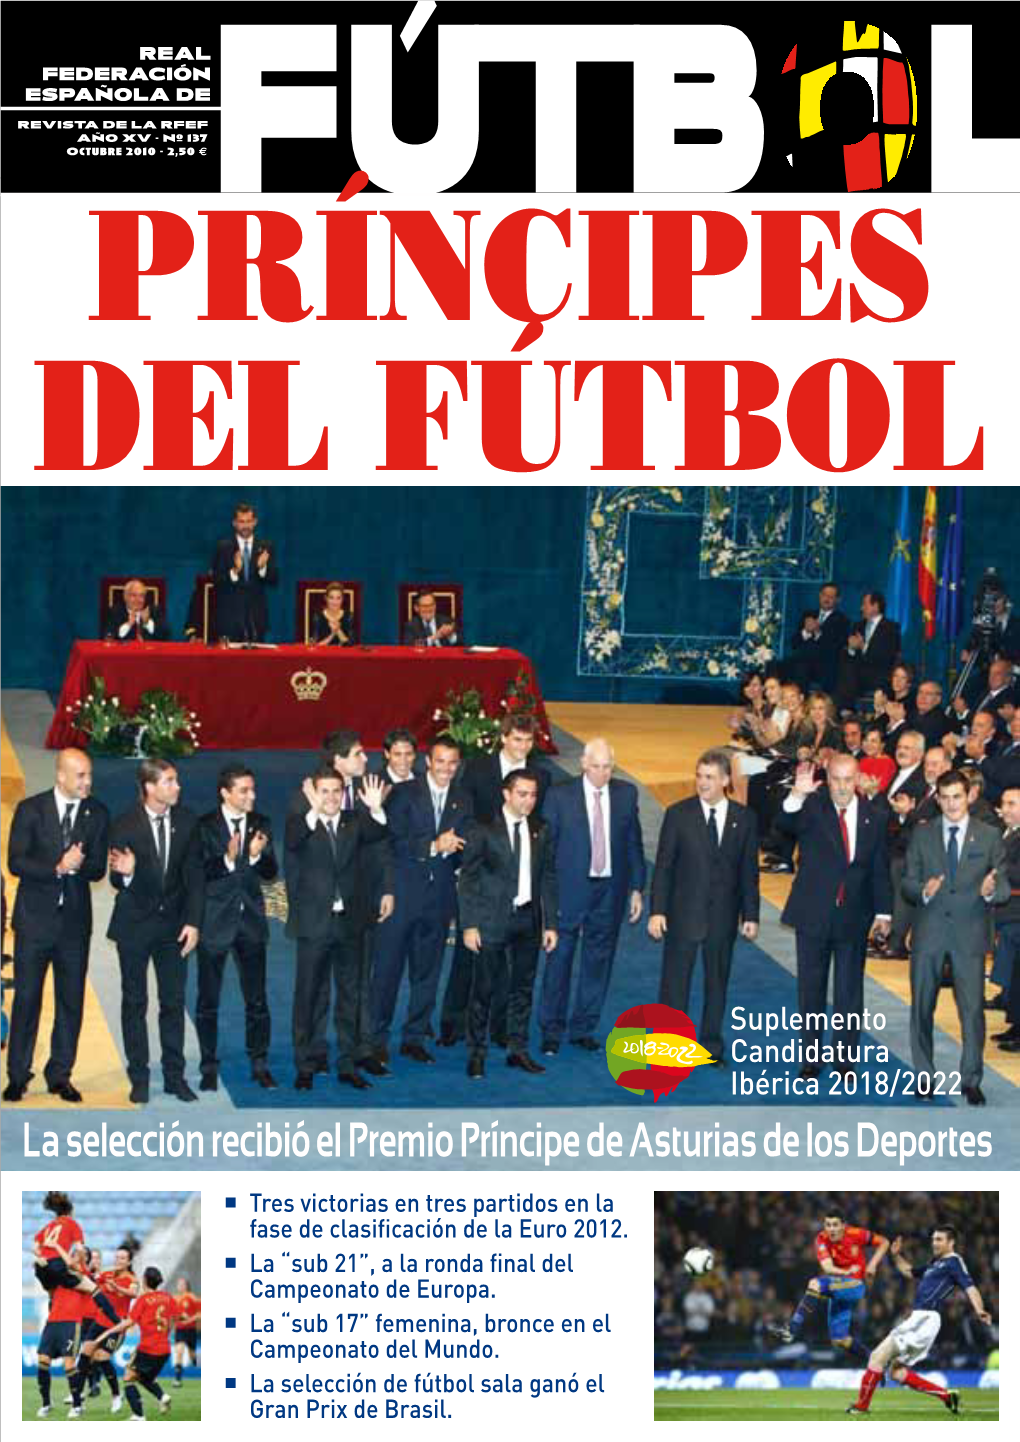 La Selección Recibió El Premio Príncipe De Asturias De Los Deportes  Tres Victorias En Tres Partidos En La Fase De Clasificación De La Euro 2012